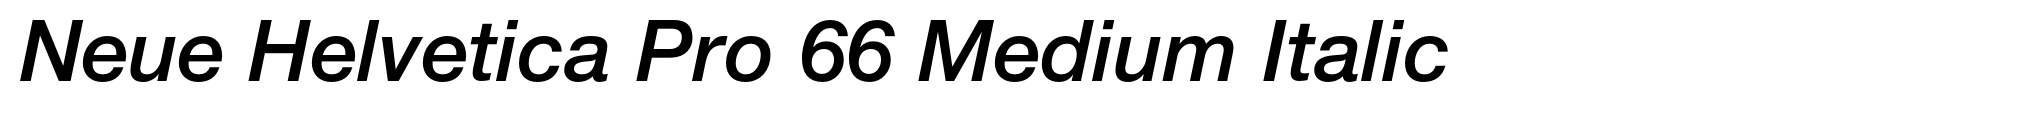 Neue Helvetica Pro 66 Medium Italic image